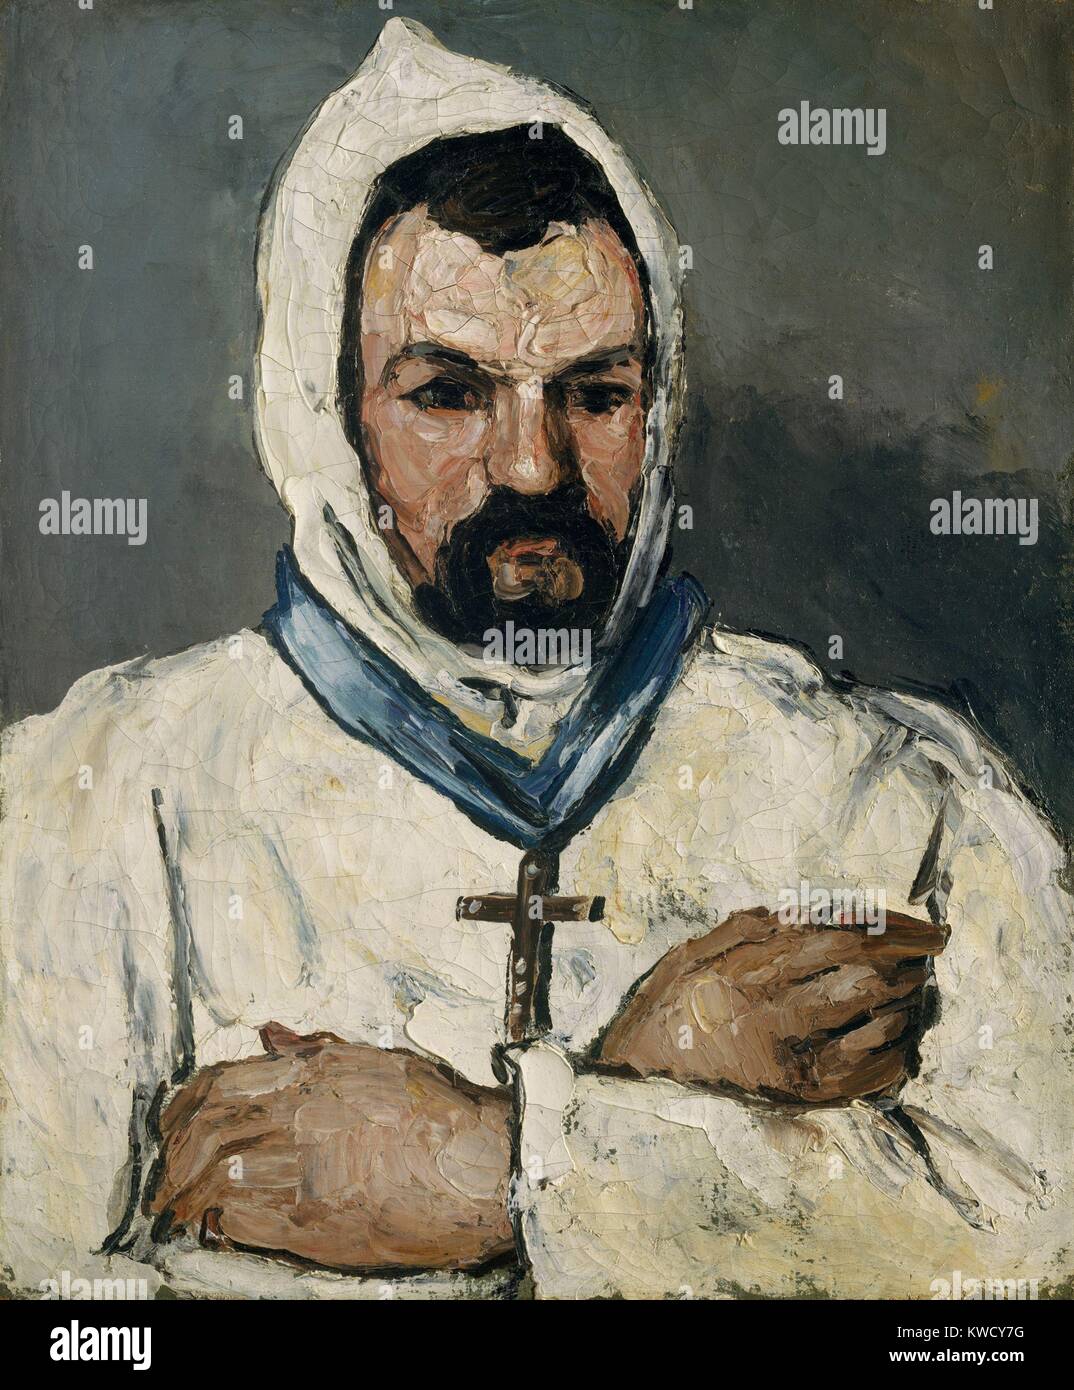 L'oncle d'artistes, en tant que moine, par Paul Cezanne, 1866, peinture à l'huile postimpressionniste français. Cézanne peint son oncle maternel, Dominique Aubert, dans différents costumes, tels que cette habitude d'un moine dominicain (BSLOC 2017 5 14) Banque D'Images